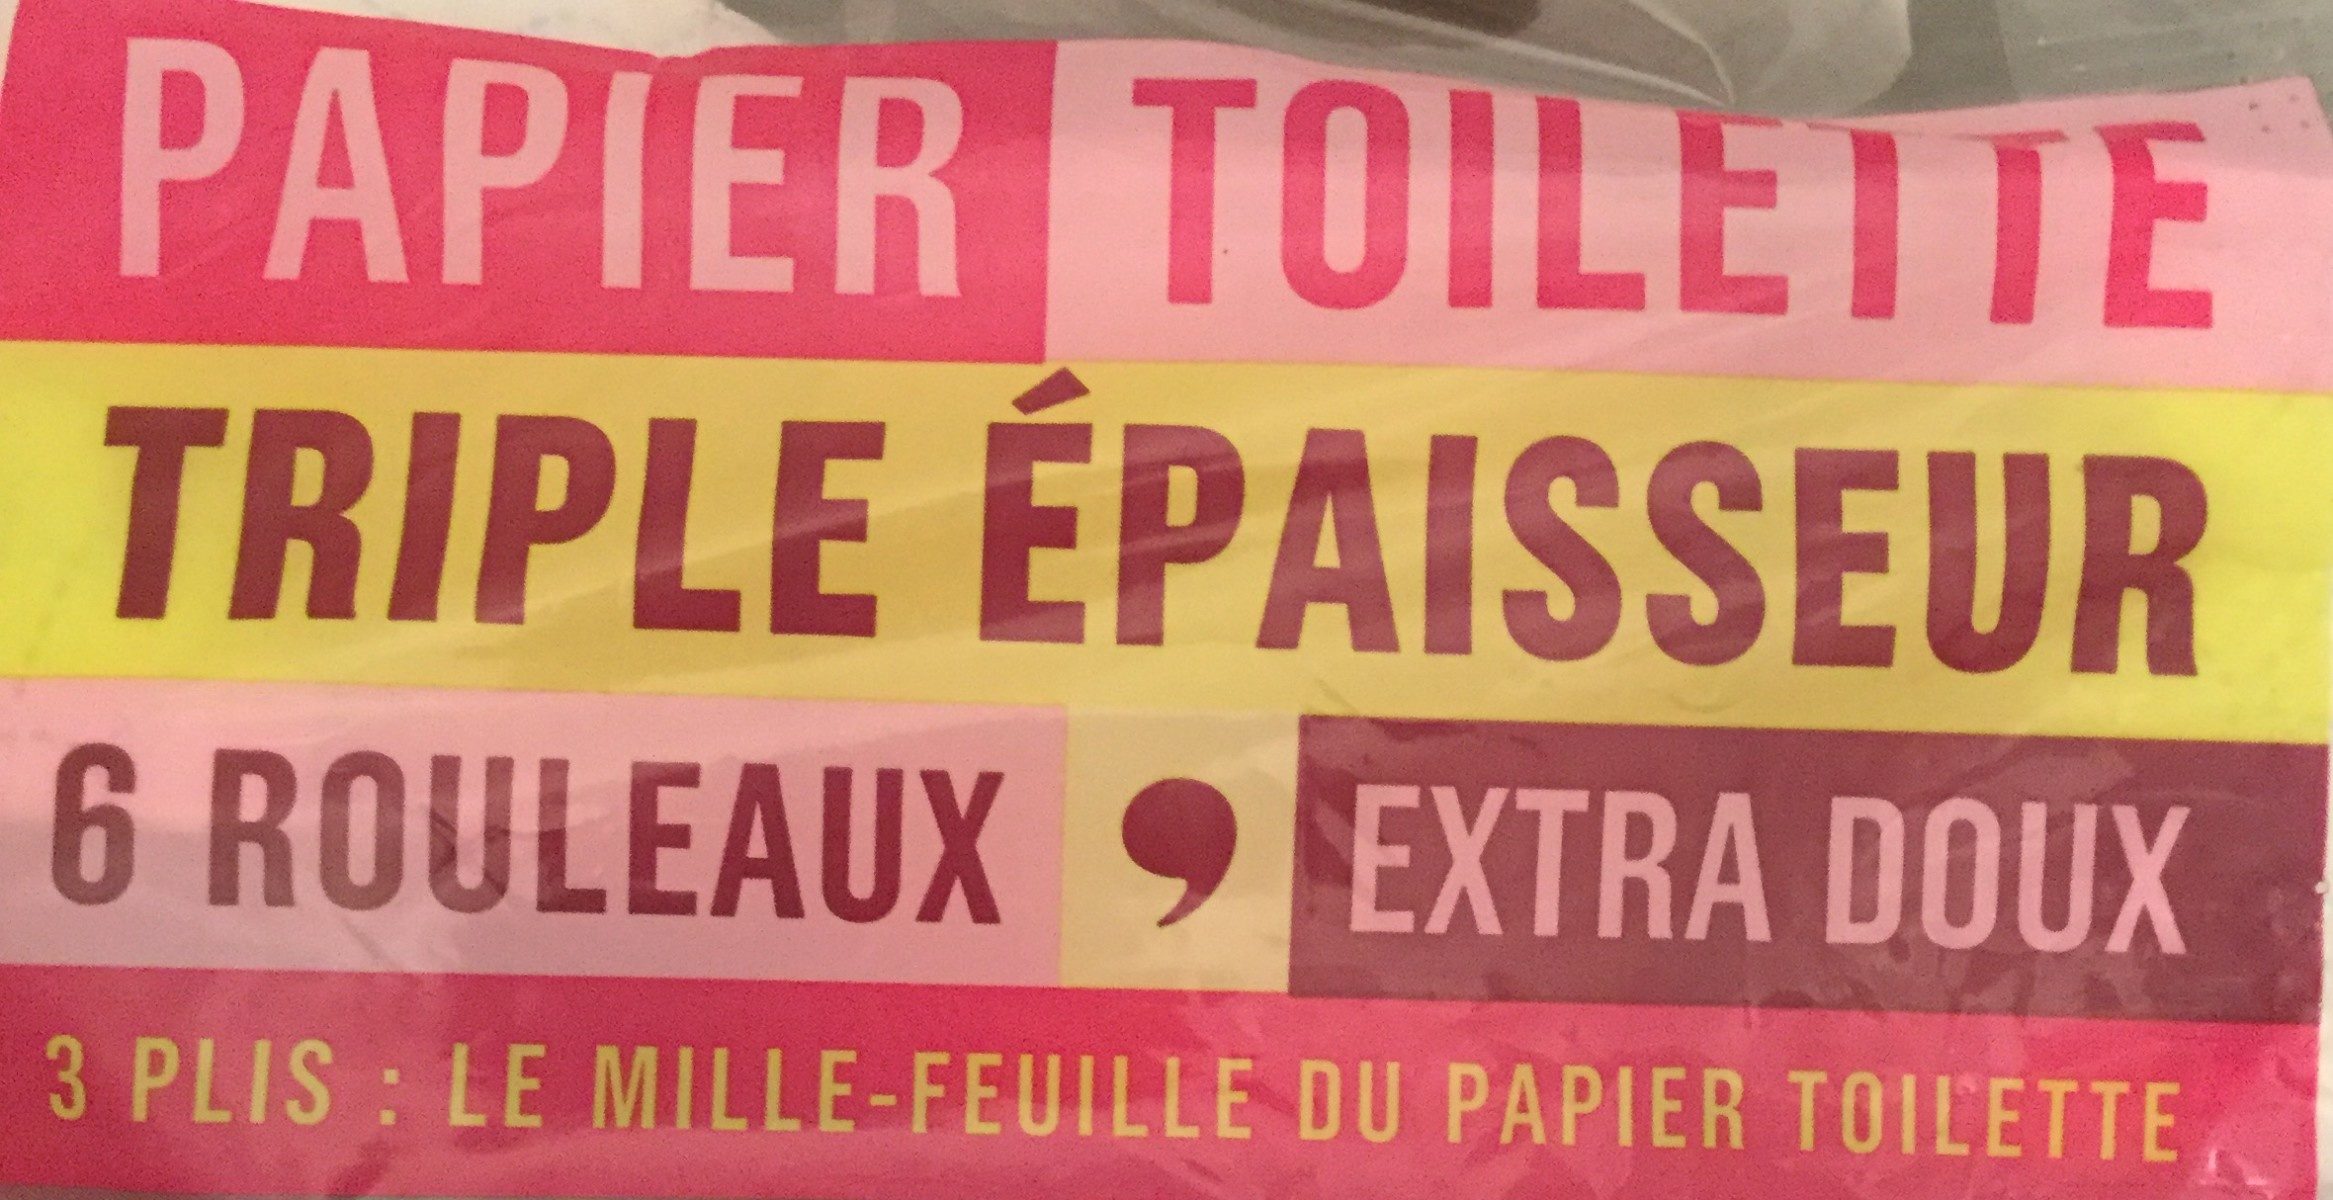 Papier toilette triple épaisseur - Ingredients - fr